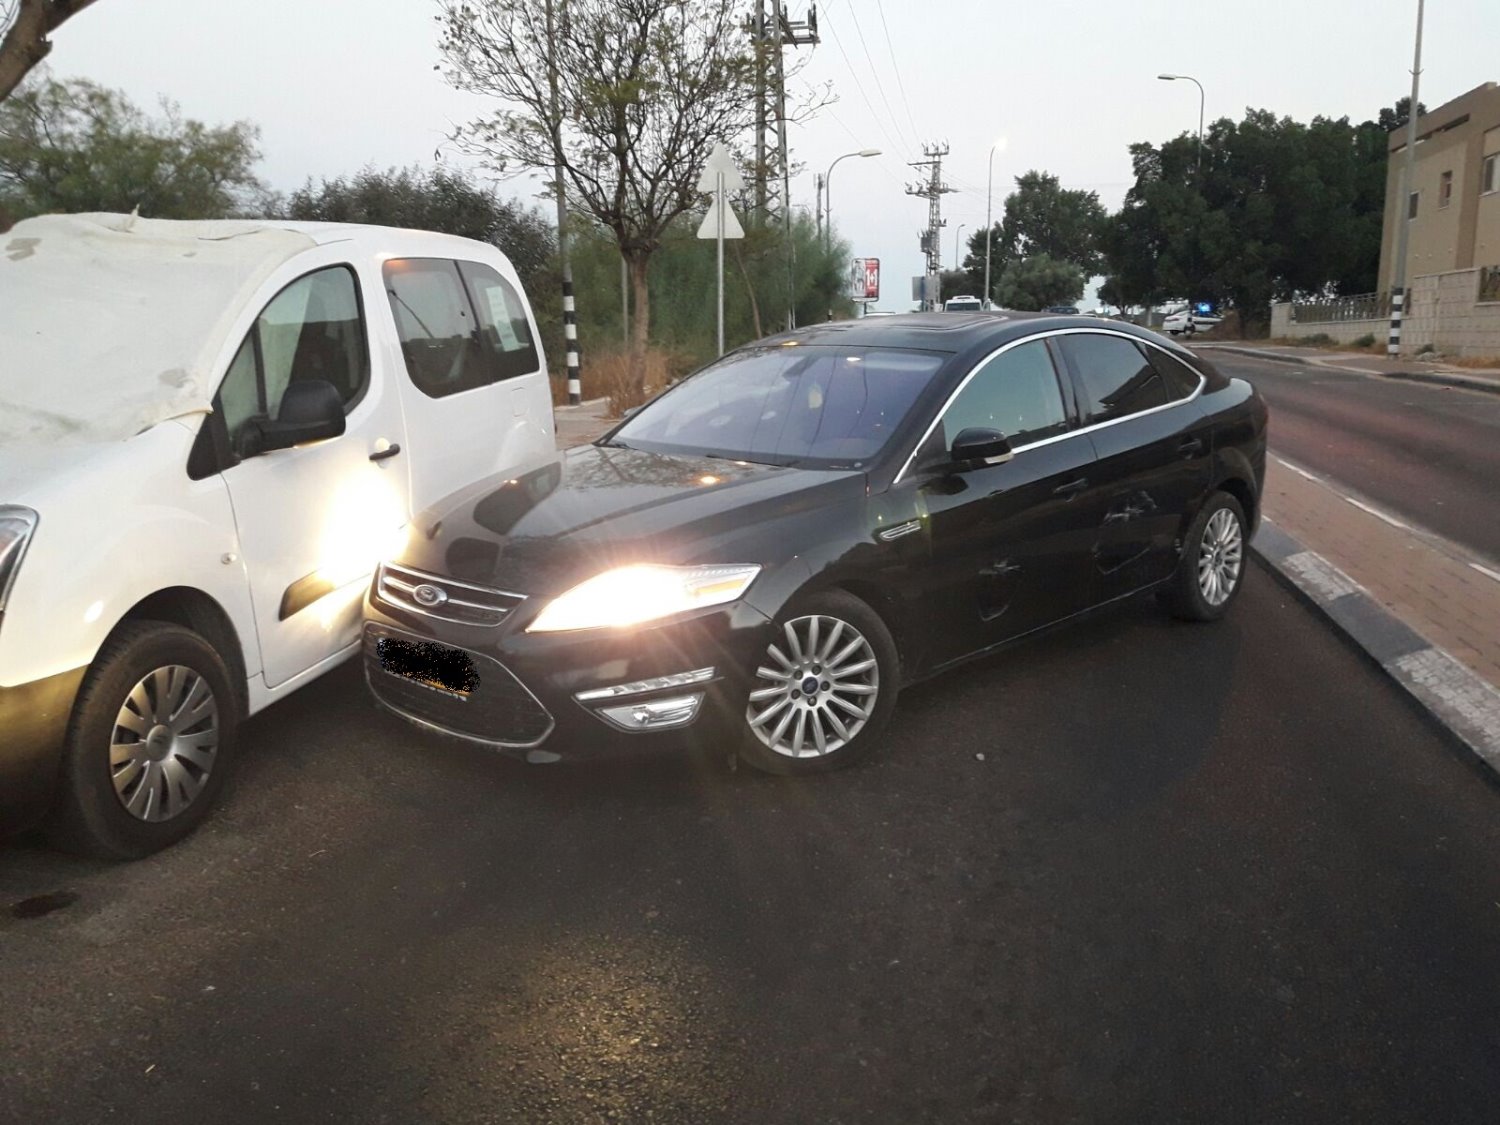 רכב החשודים לאחר שנעצר בקרית מלאכי - קרדיט קבוצת החדשות באשדוד